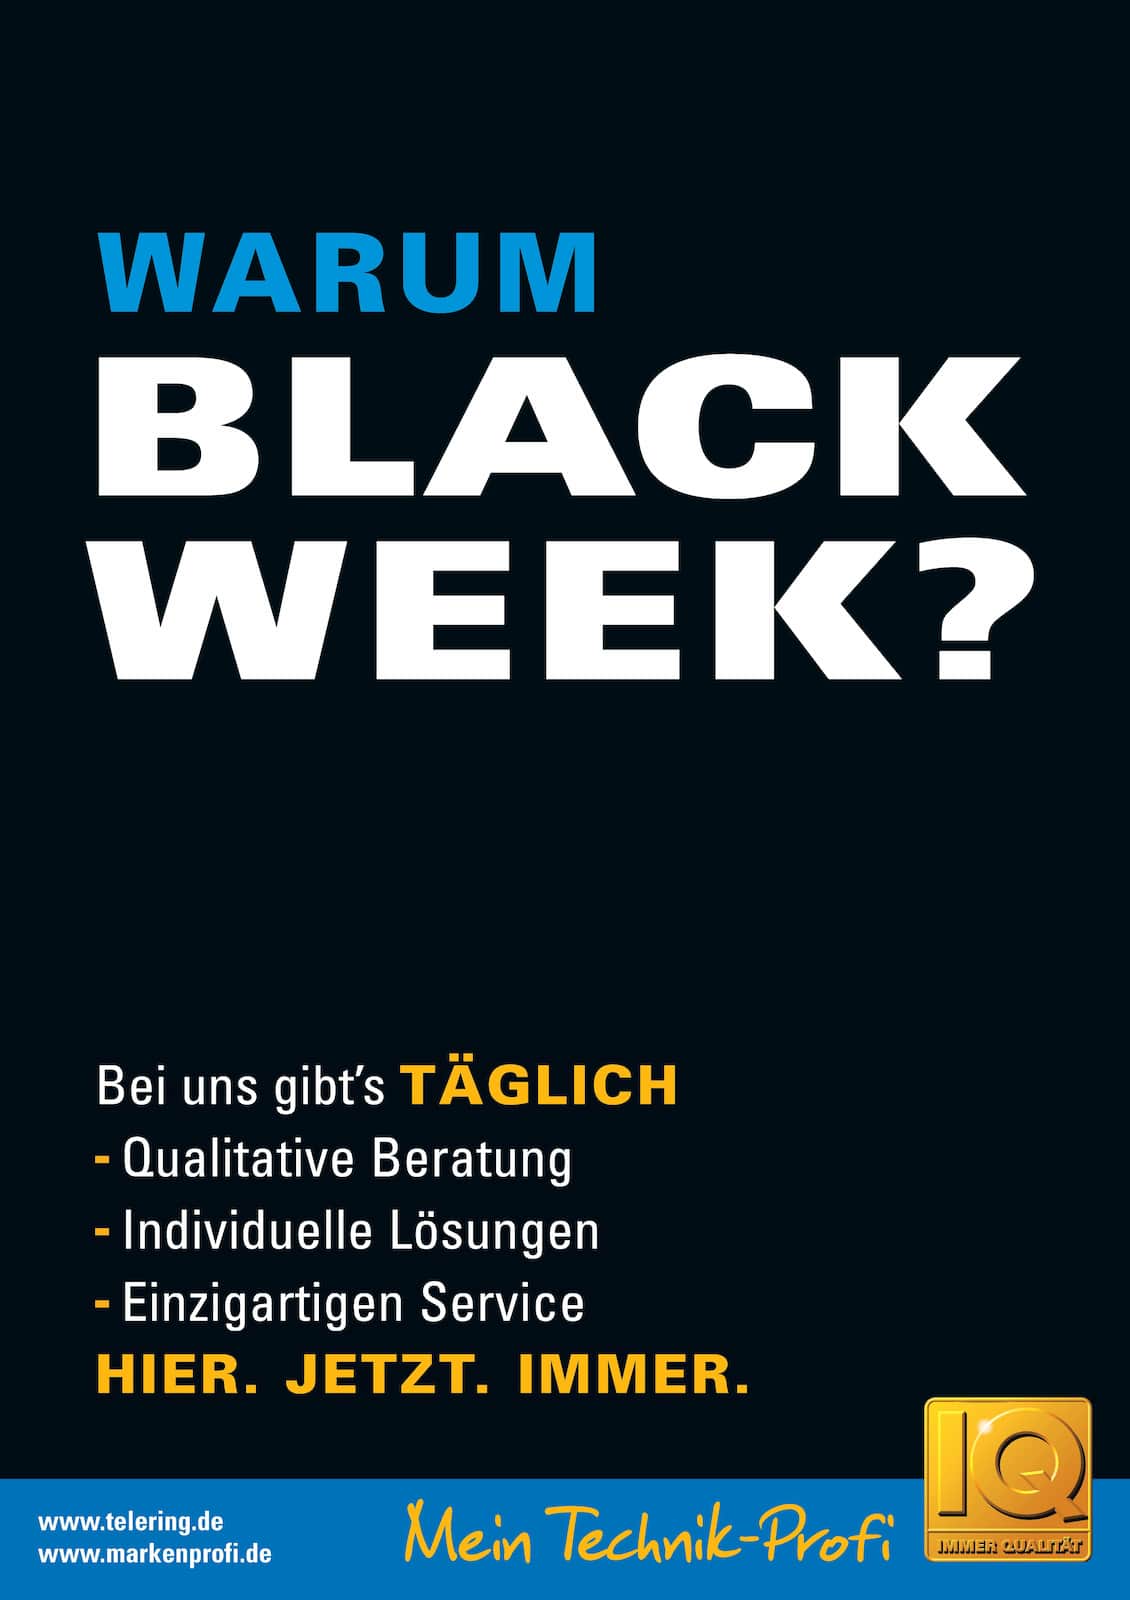 Das Aktionsposter der telering zur Black Week.